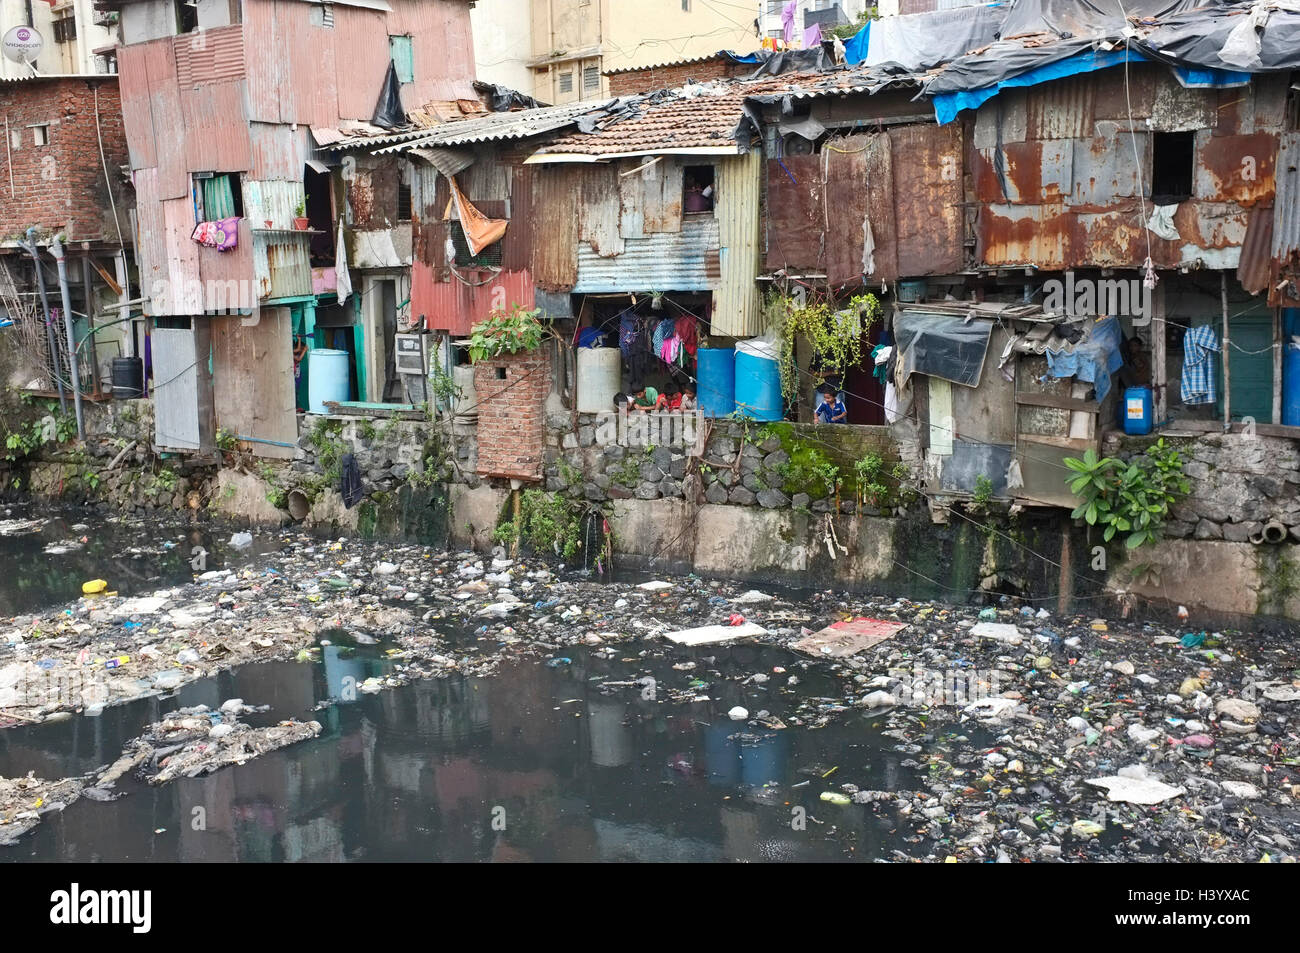 sewerage and plastic pollution next to slum housing , dharavi slum, mumbai, Maharashtra, india Stock Photo